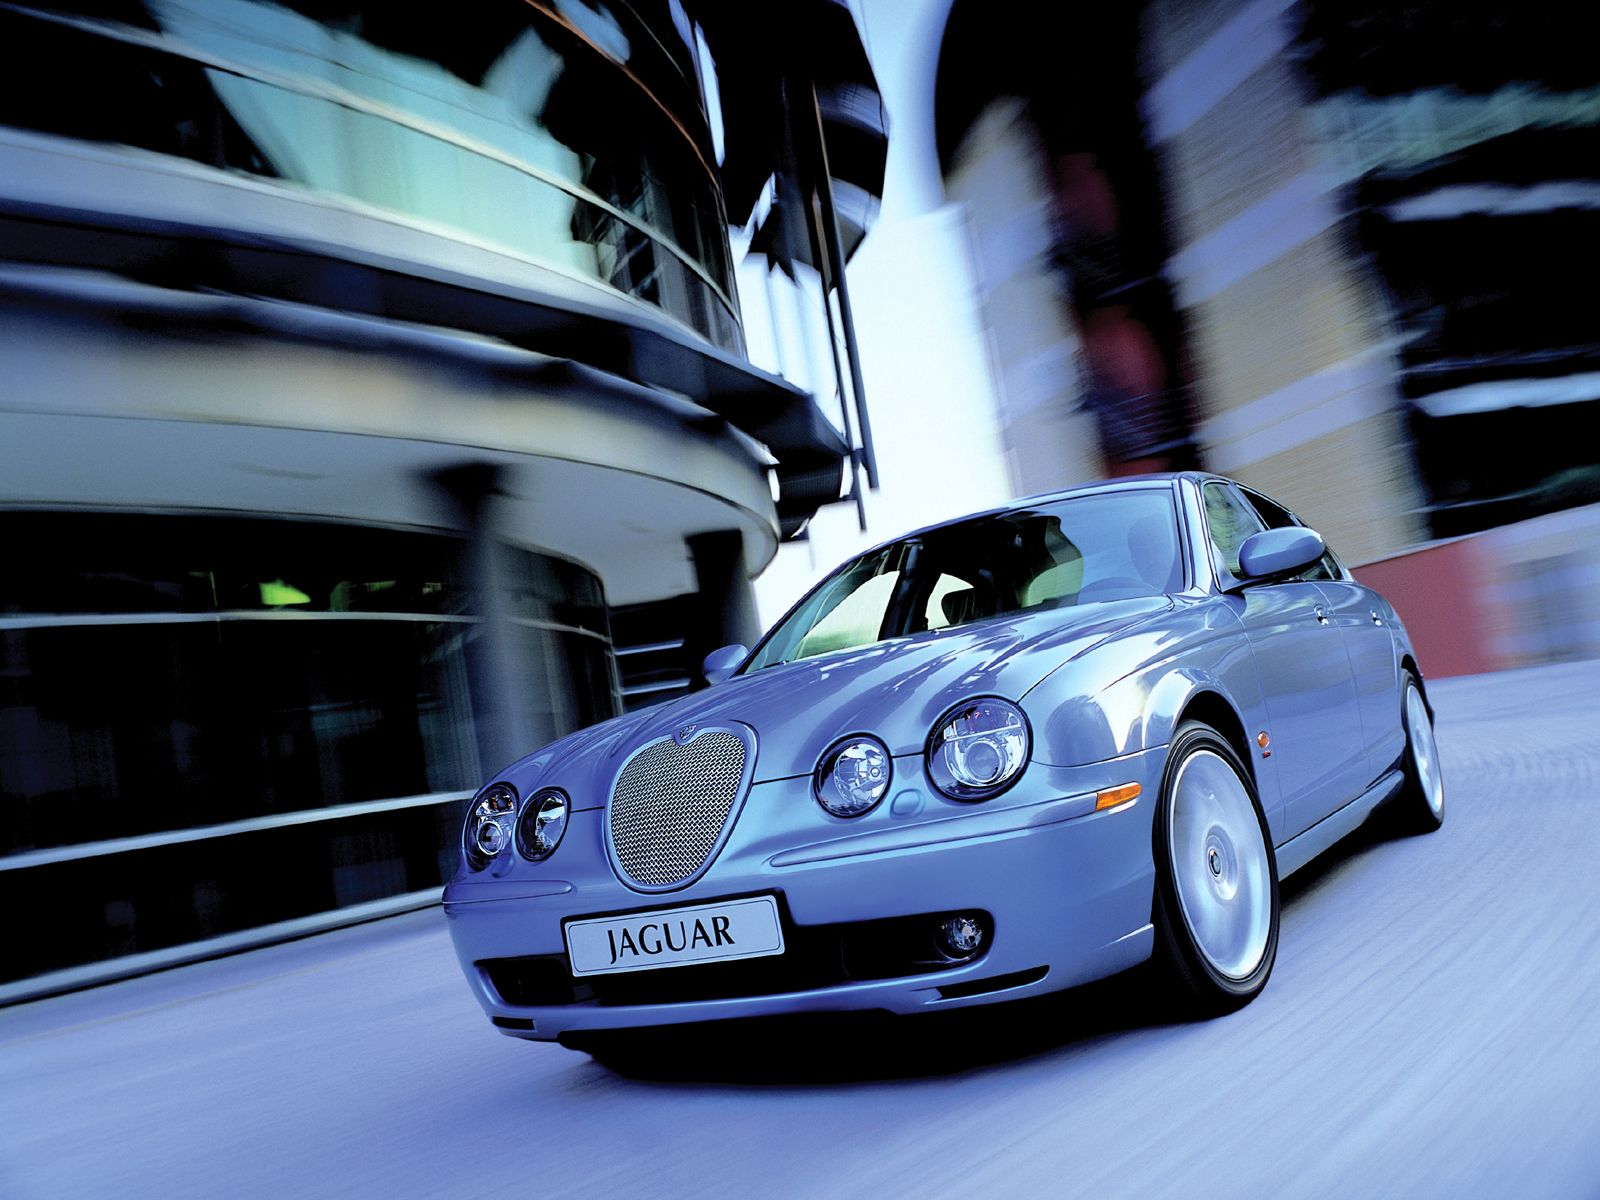 Descarga gratuita de fondo de pantalla para móvil de Jaguar, Vehículos.